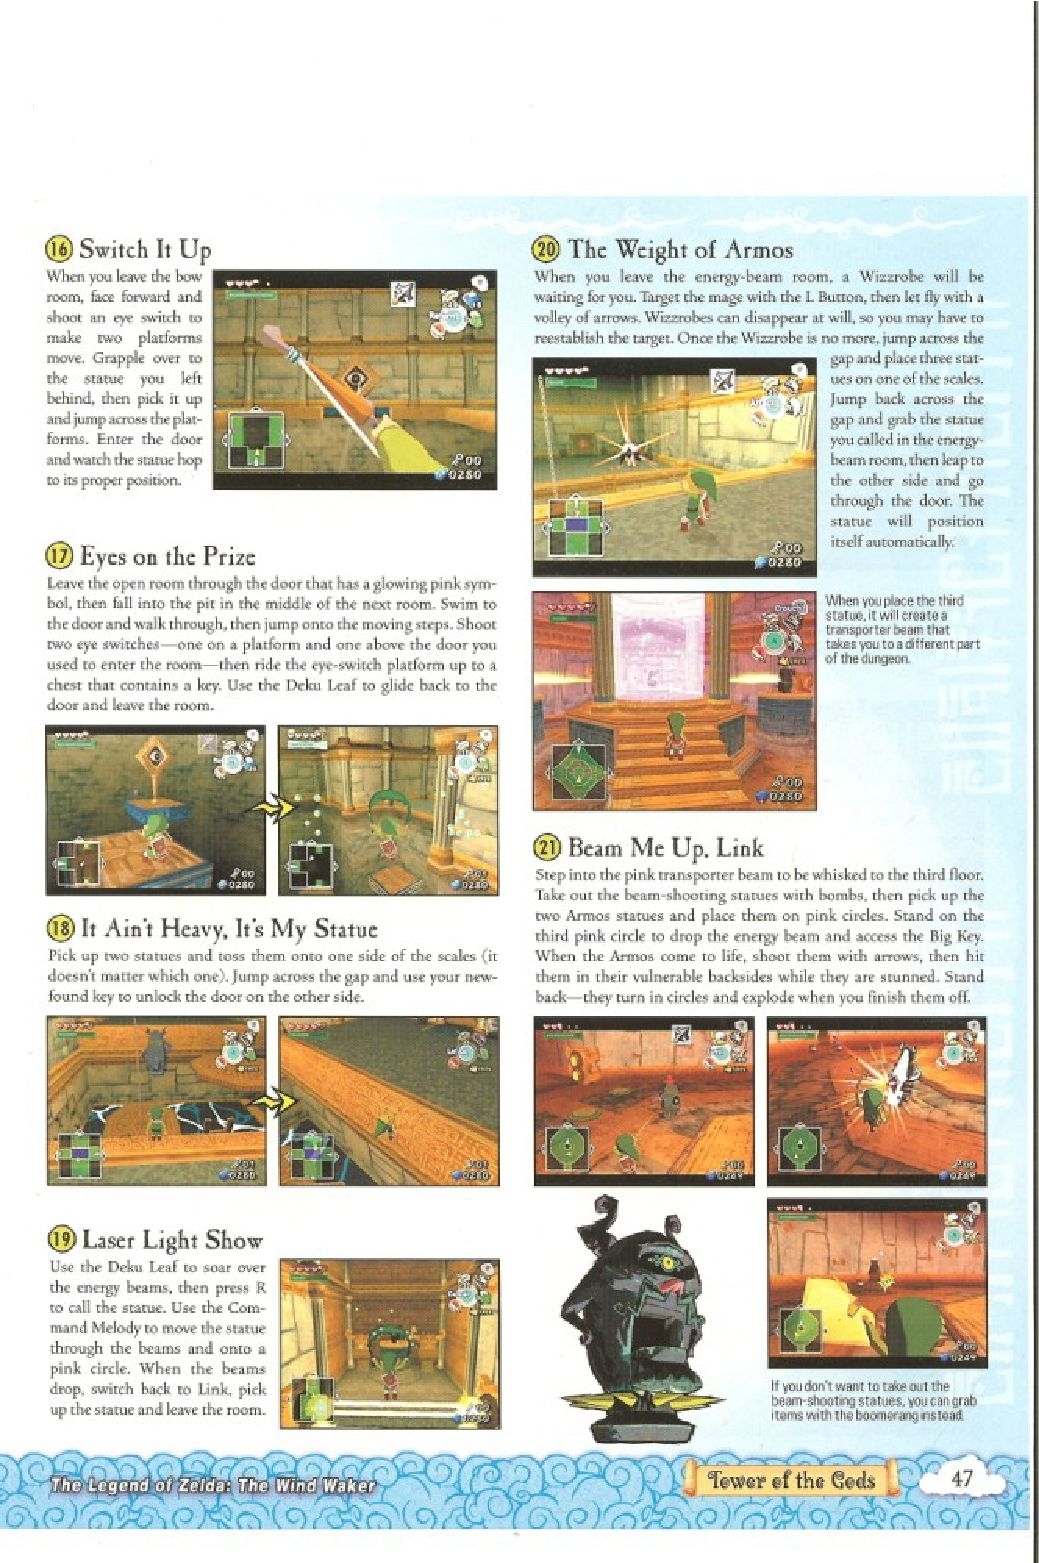 The Legend of Zelda - wind waker - Strategy Guide 49